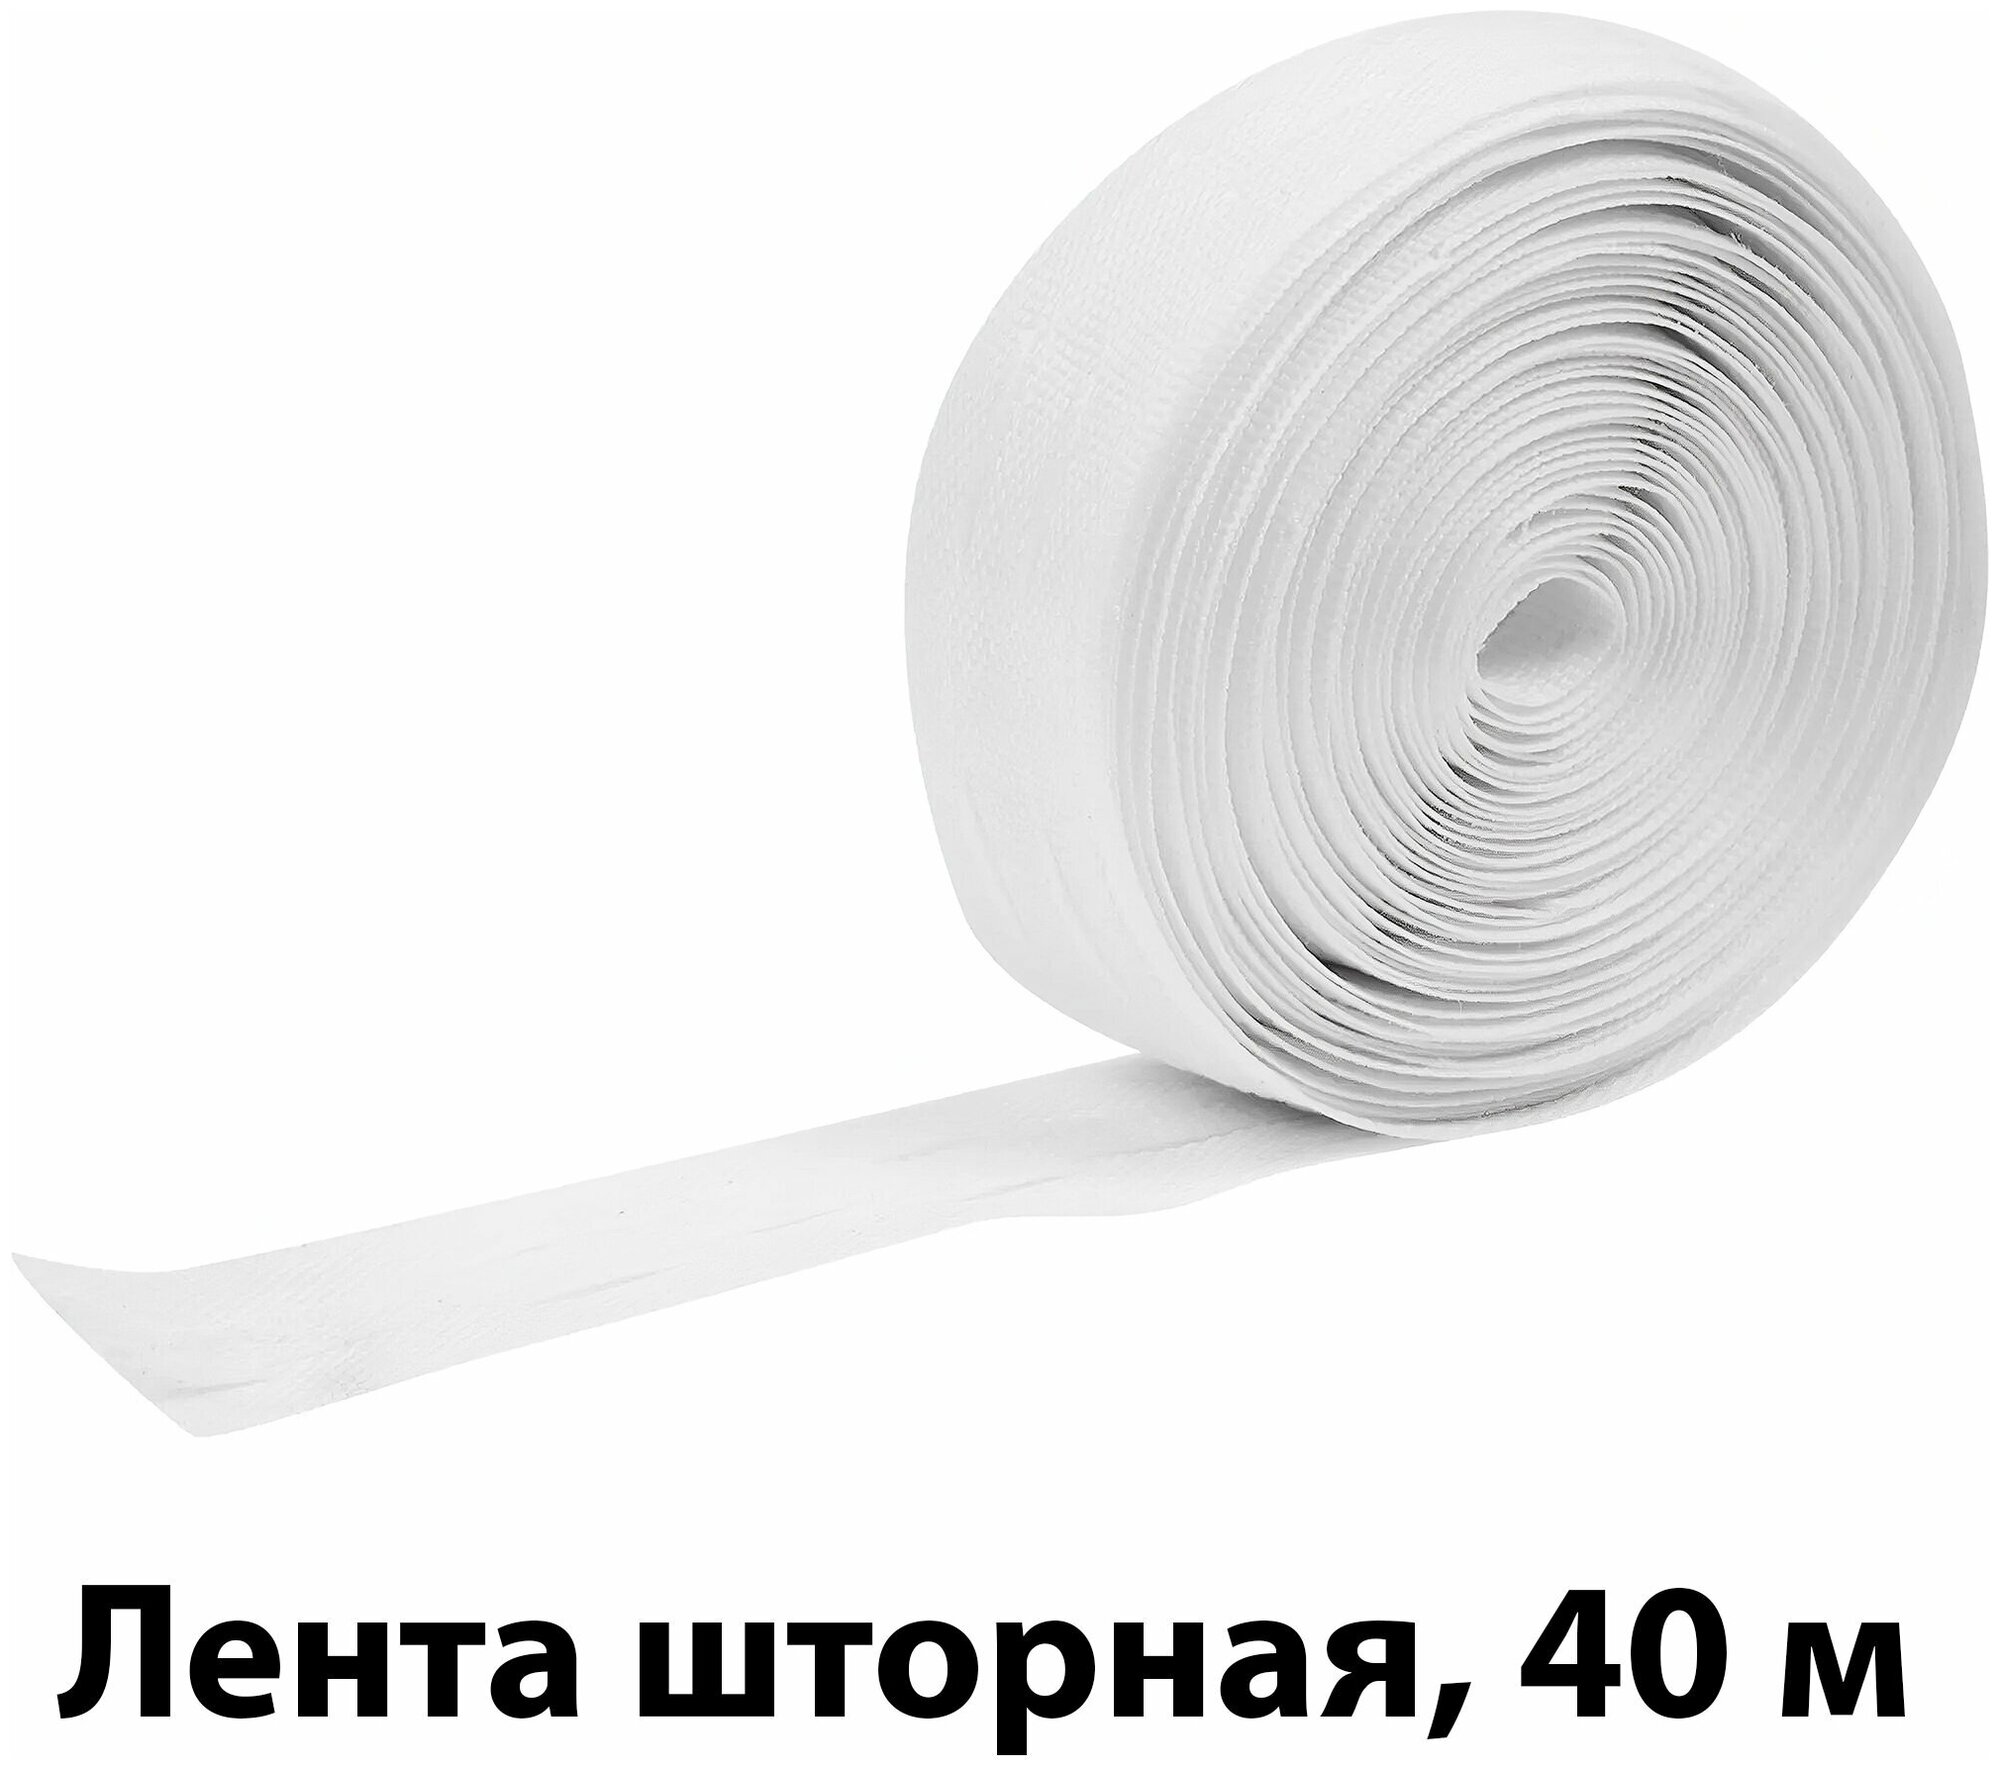 Лента шторная 40 м: 25 мм; цвет матовый белый; декоративная мягкая фурнитура используемая для создания на ткани складок разной ширины и конфигурации